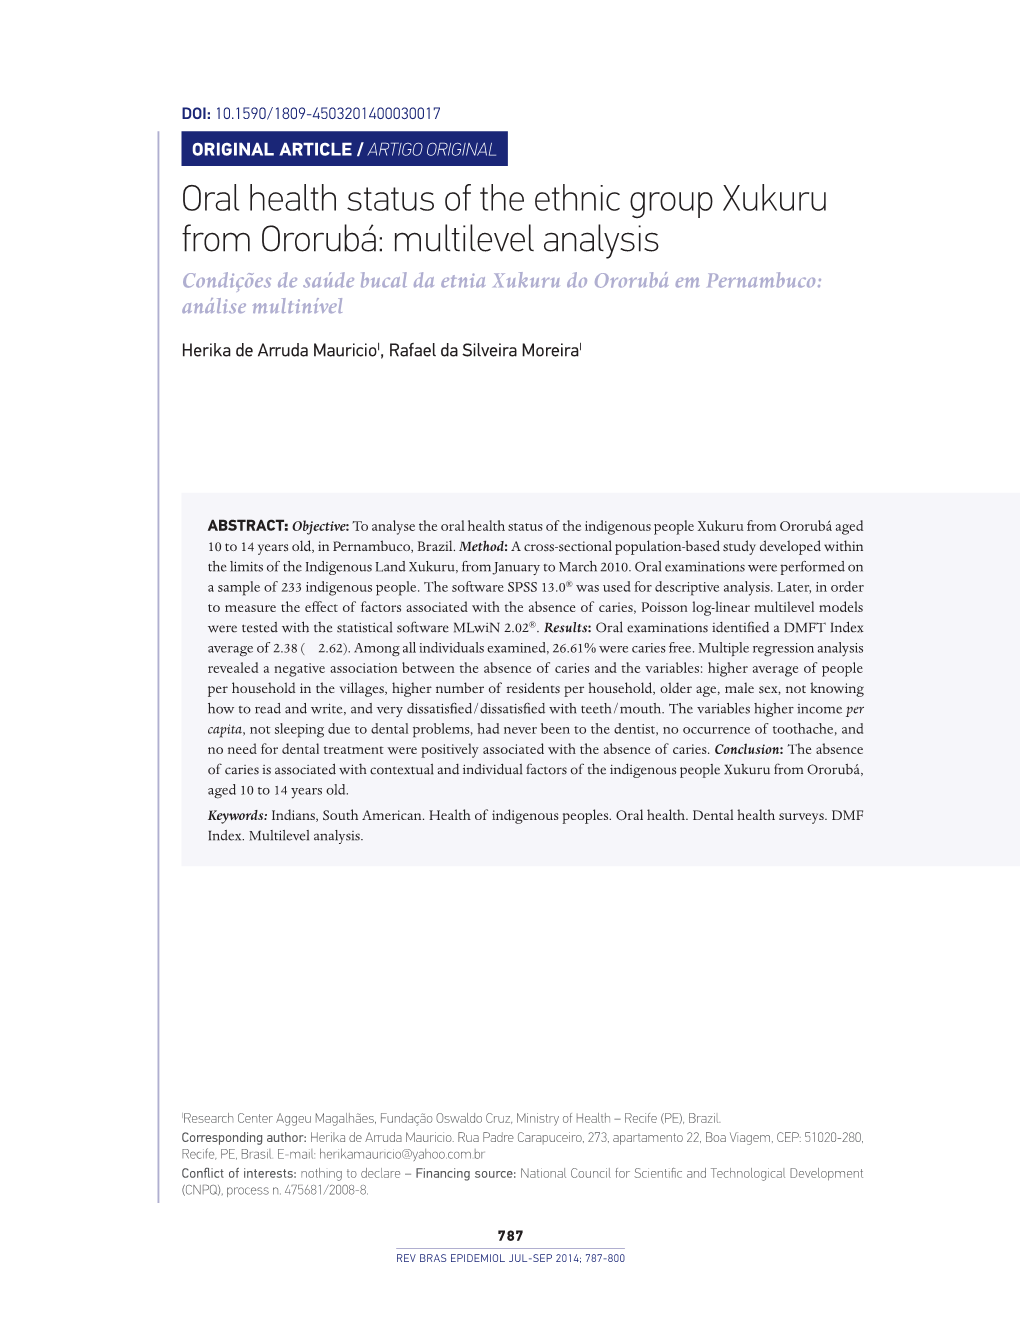 Oral Health Status of the Ethnic Group Xukuru from Ororubá: Multilevel Analysis Condições De Saúde Bucal Da Etnia Xukuru Do Ororubá Em Pernambuco: Análise Multinível